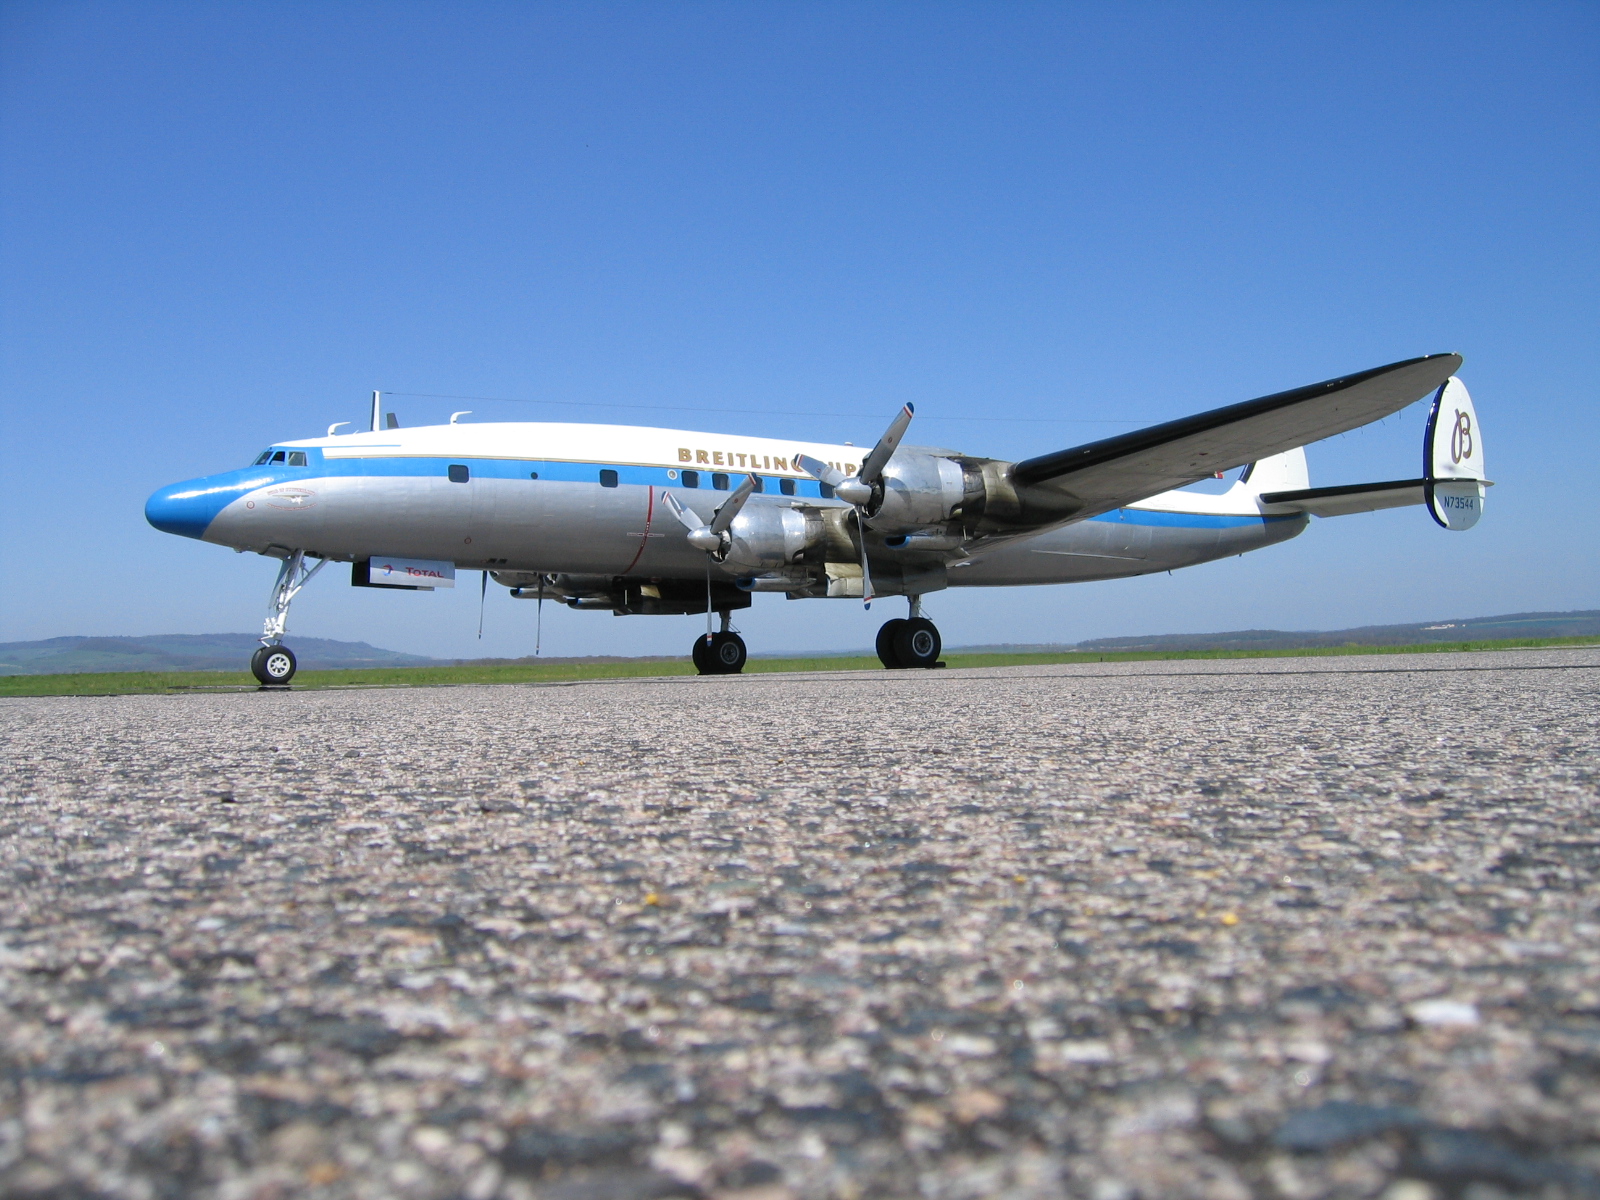 A világ egyik legszebb utasszállítója, a Lockheed Constellation is repül